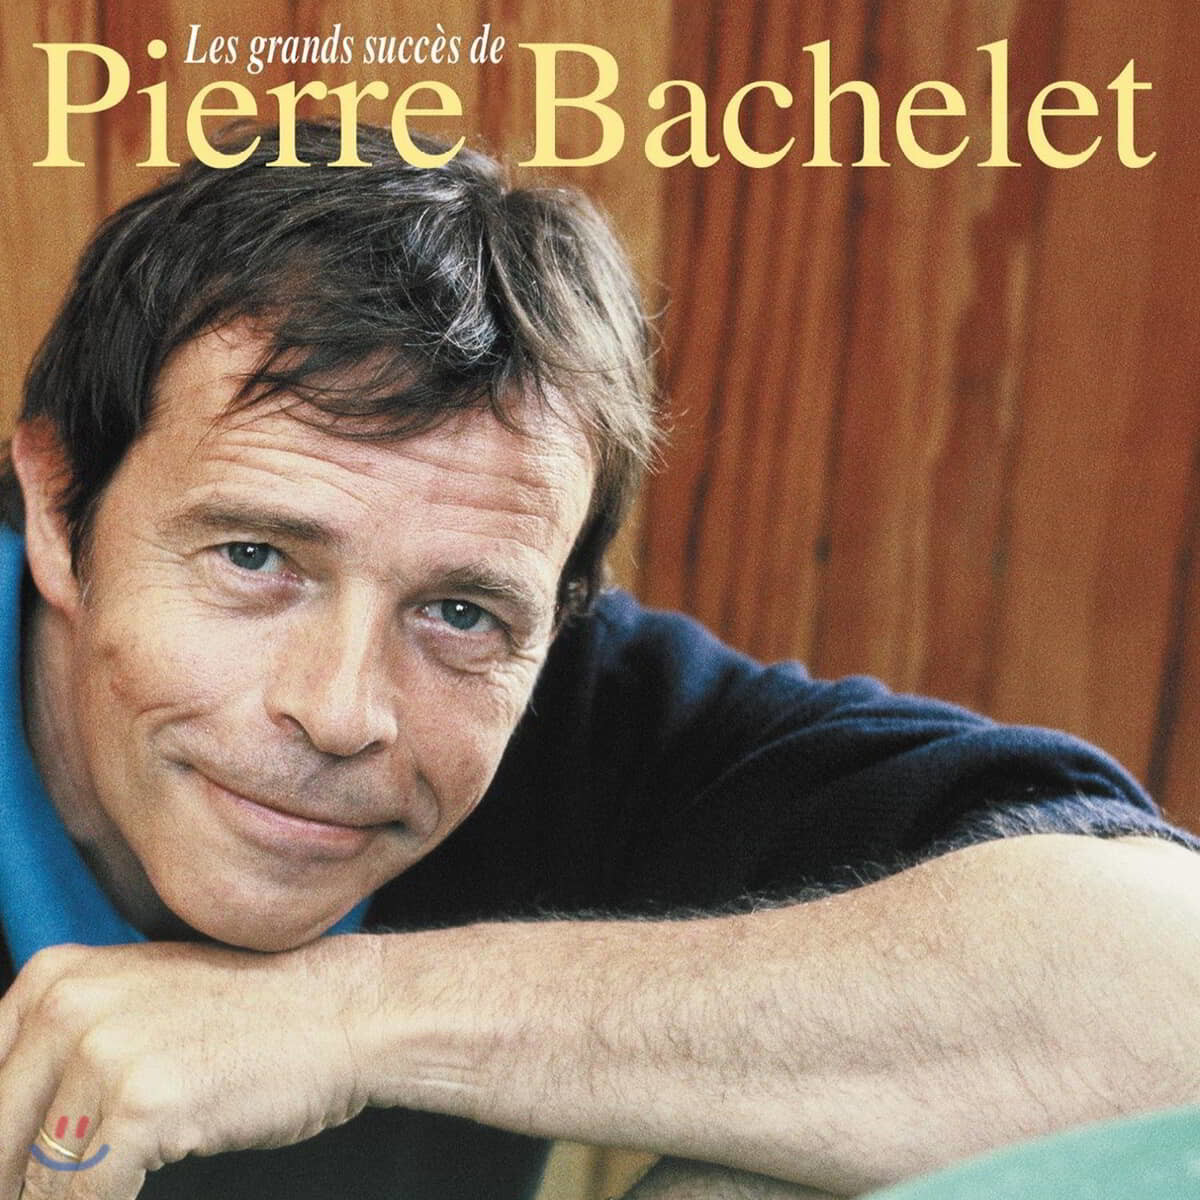 Pierre Bachelet (피에르 바슐레) - Les Grands Succes De Pierre Bachelet